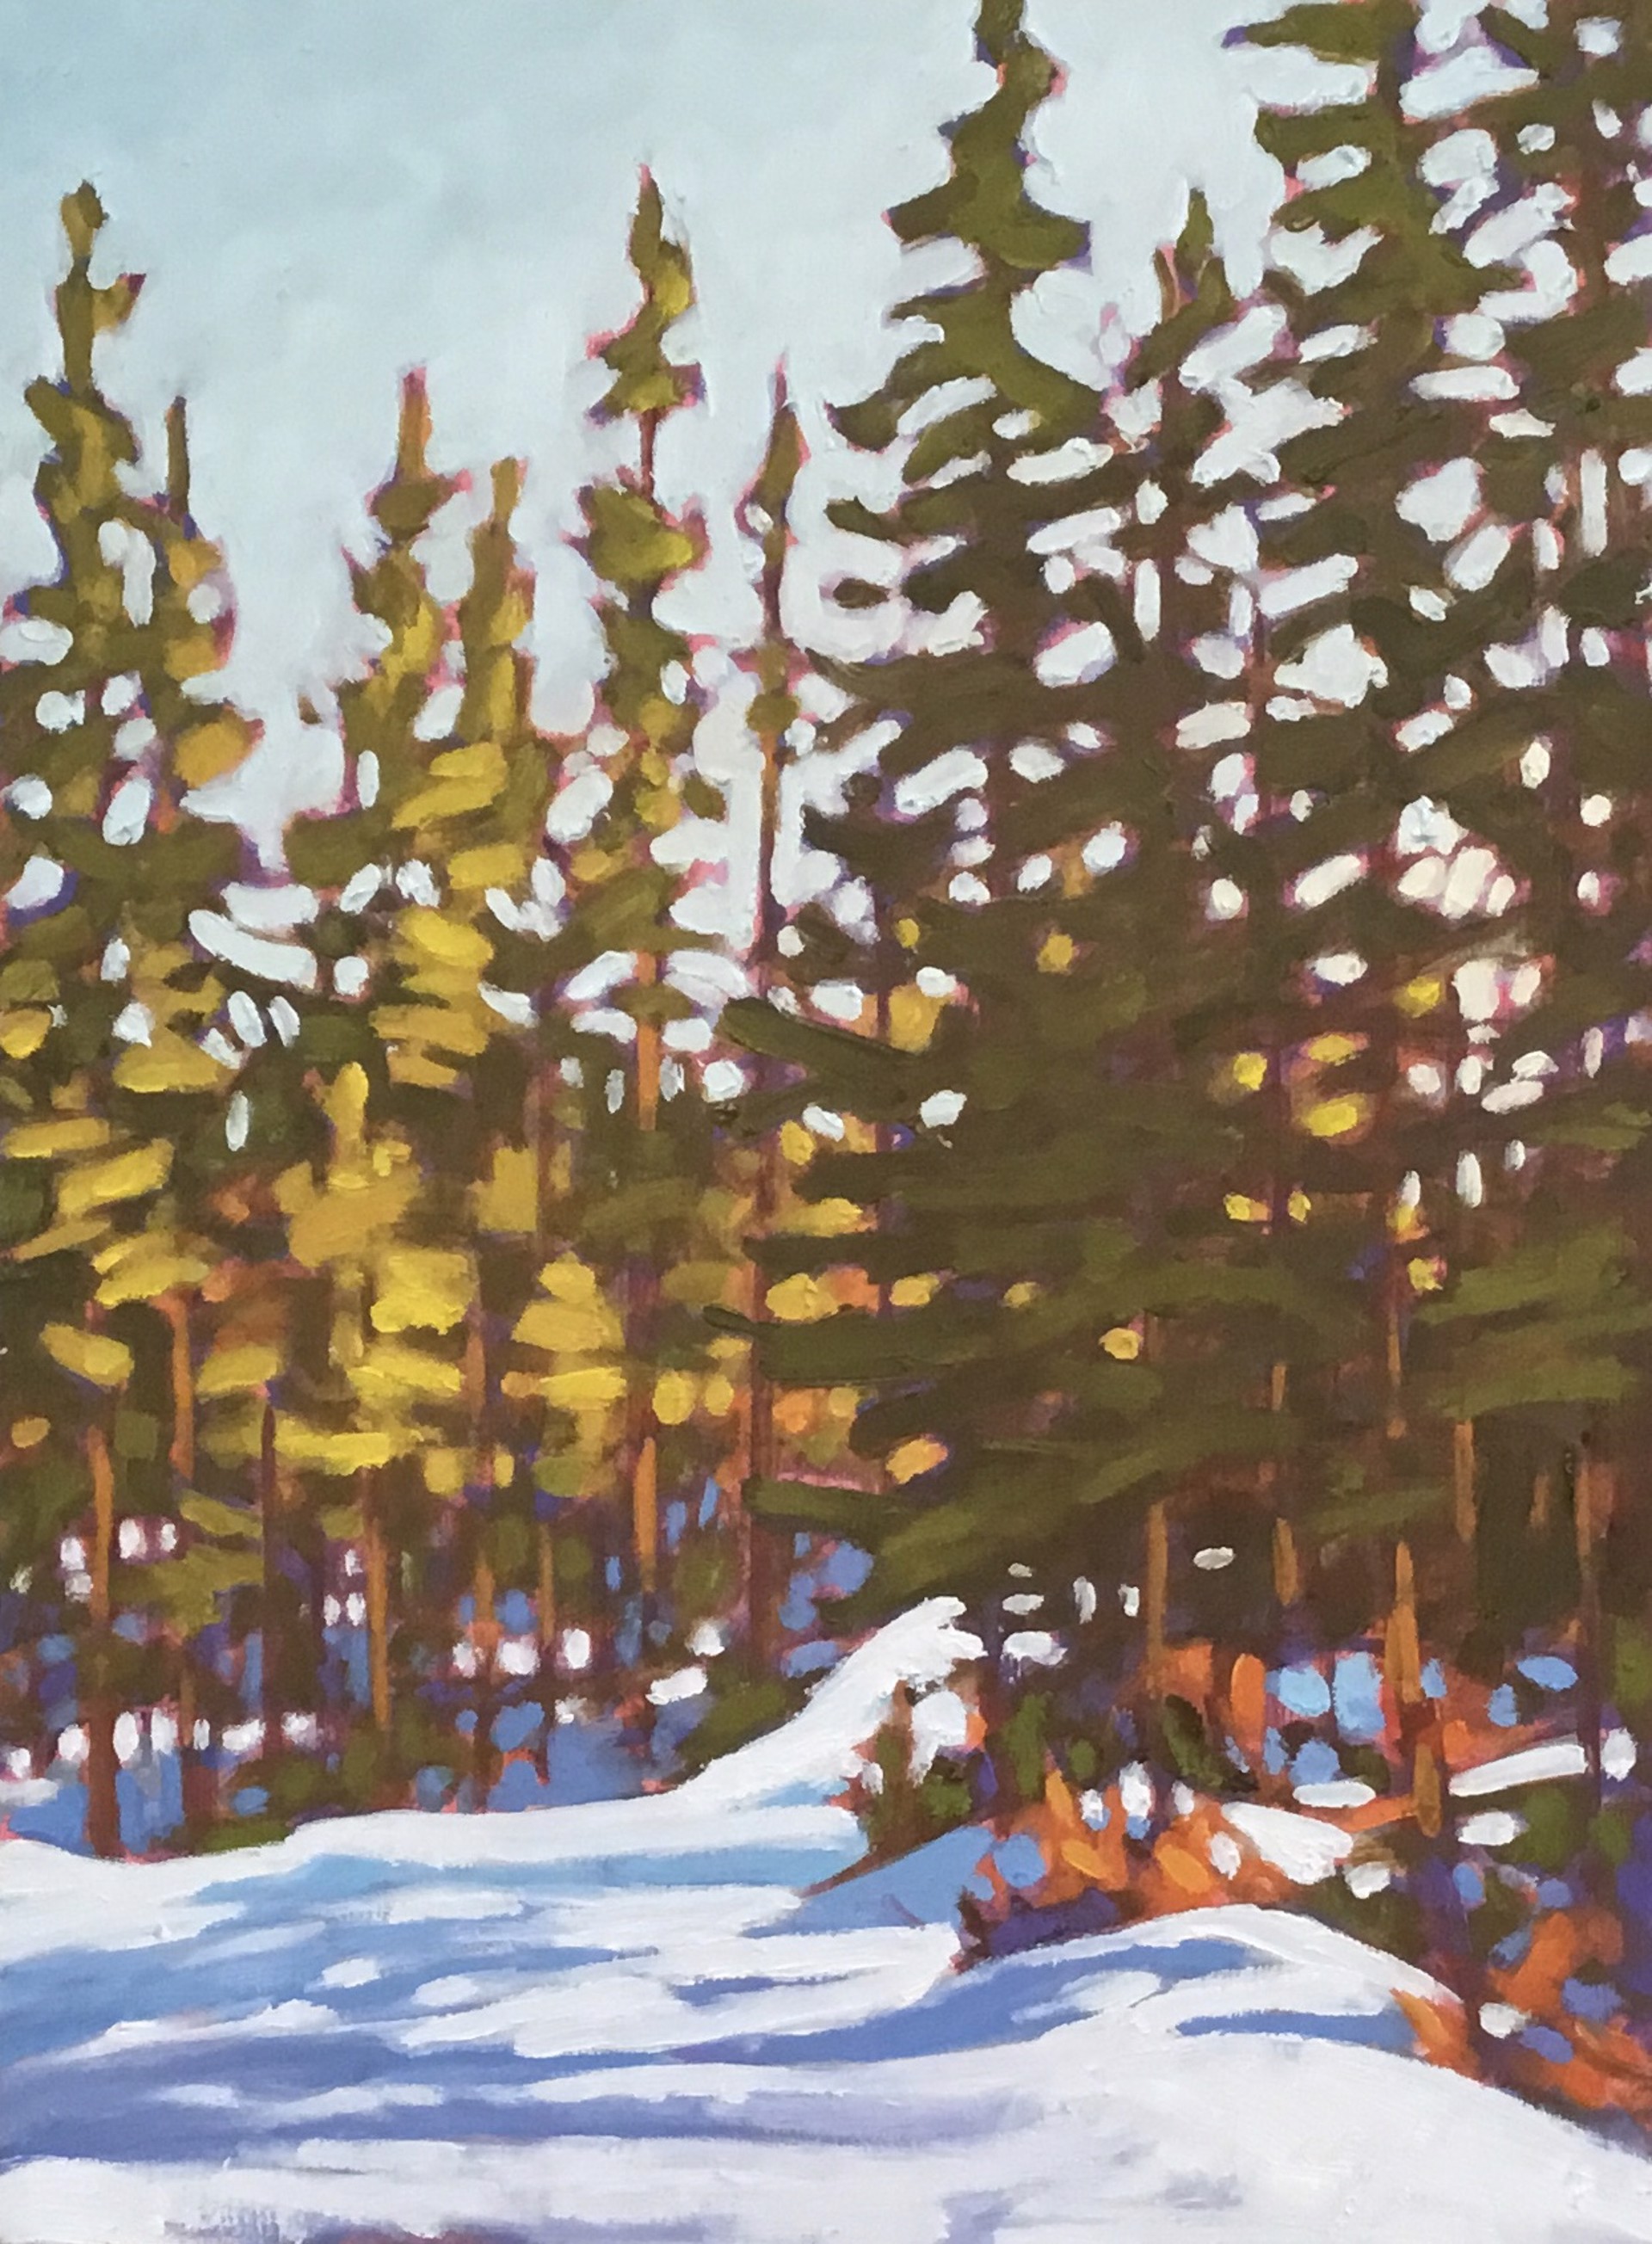 Winter Woods by John Lennard